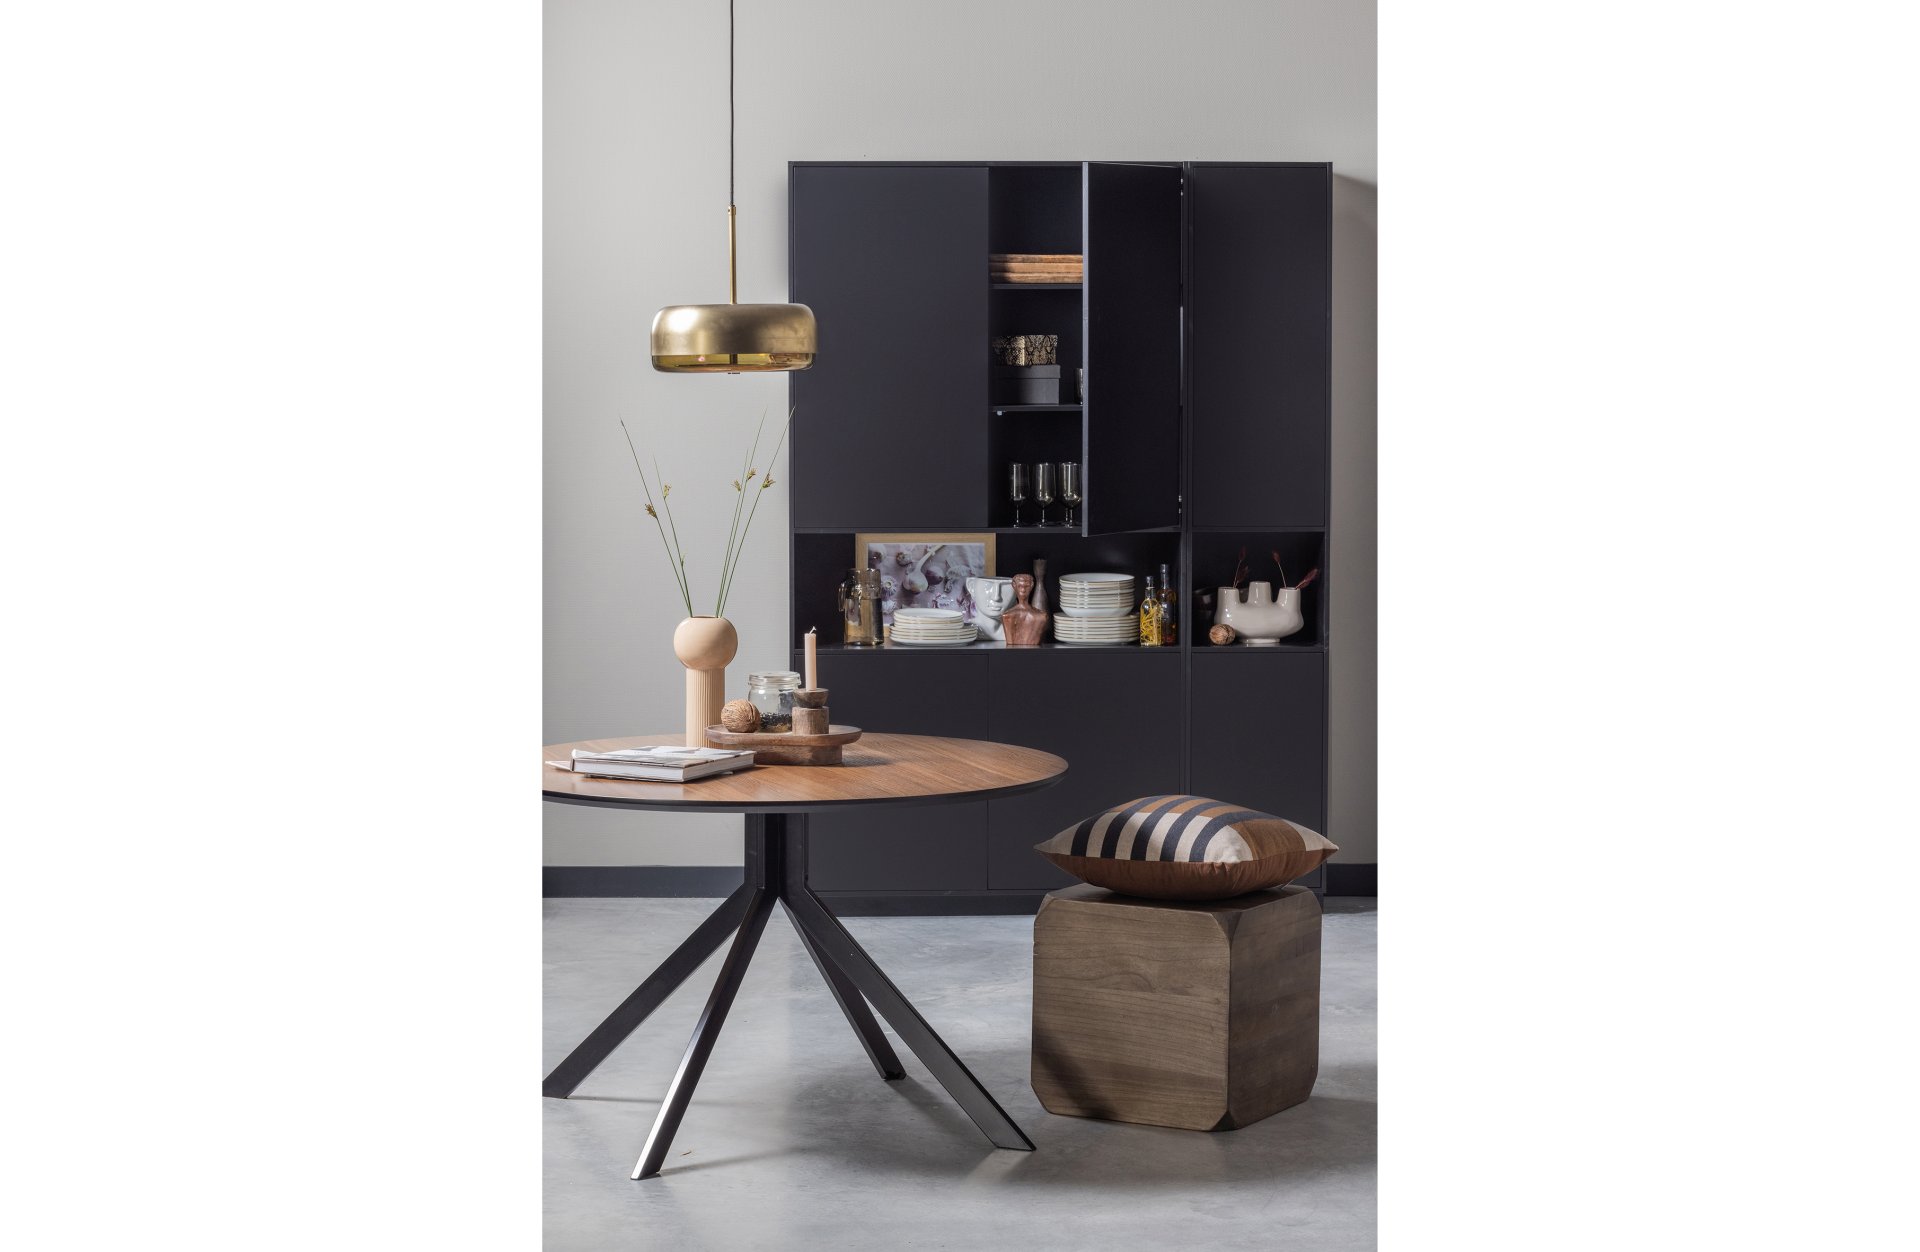 Der Beistelltisch Lio wurde aus Paulowniaholz gefertigt. Der Tisch ist massiv und hat einen dunkelbraunen Farbton.